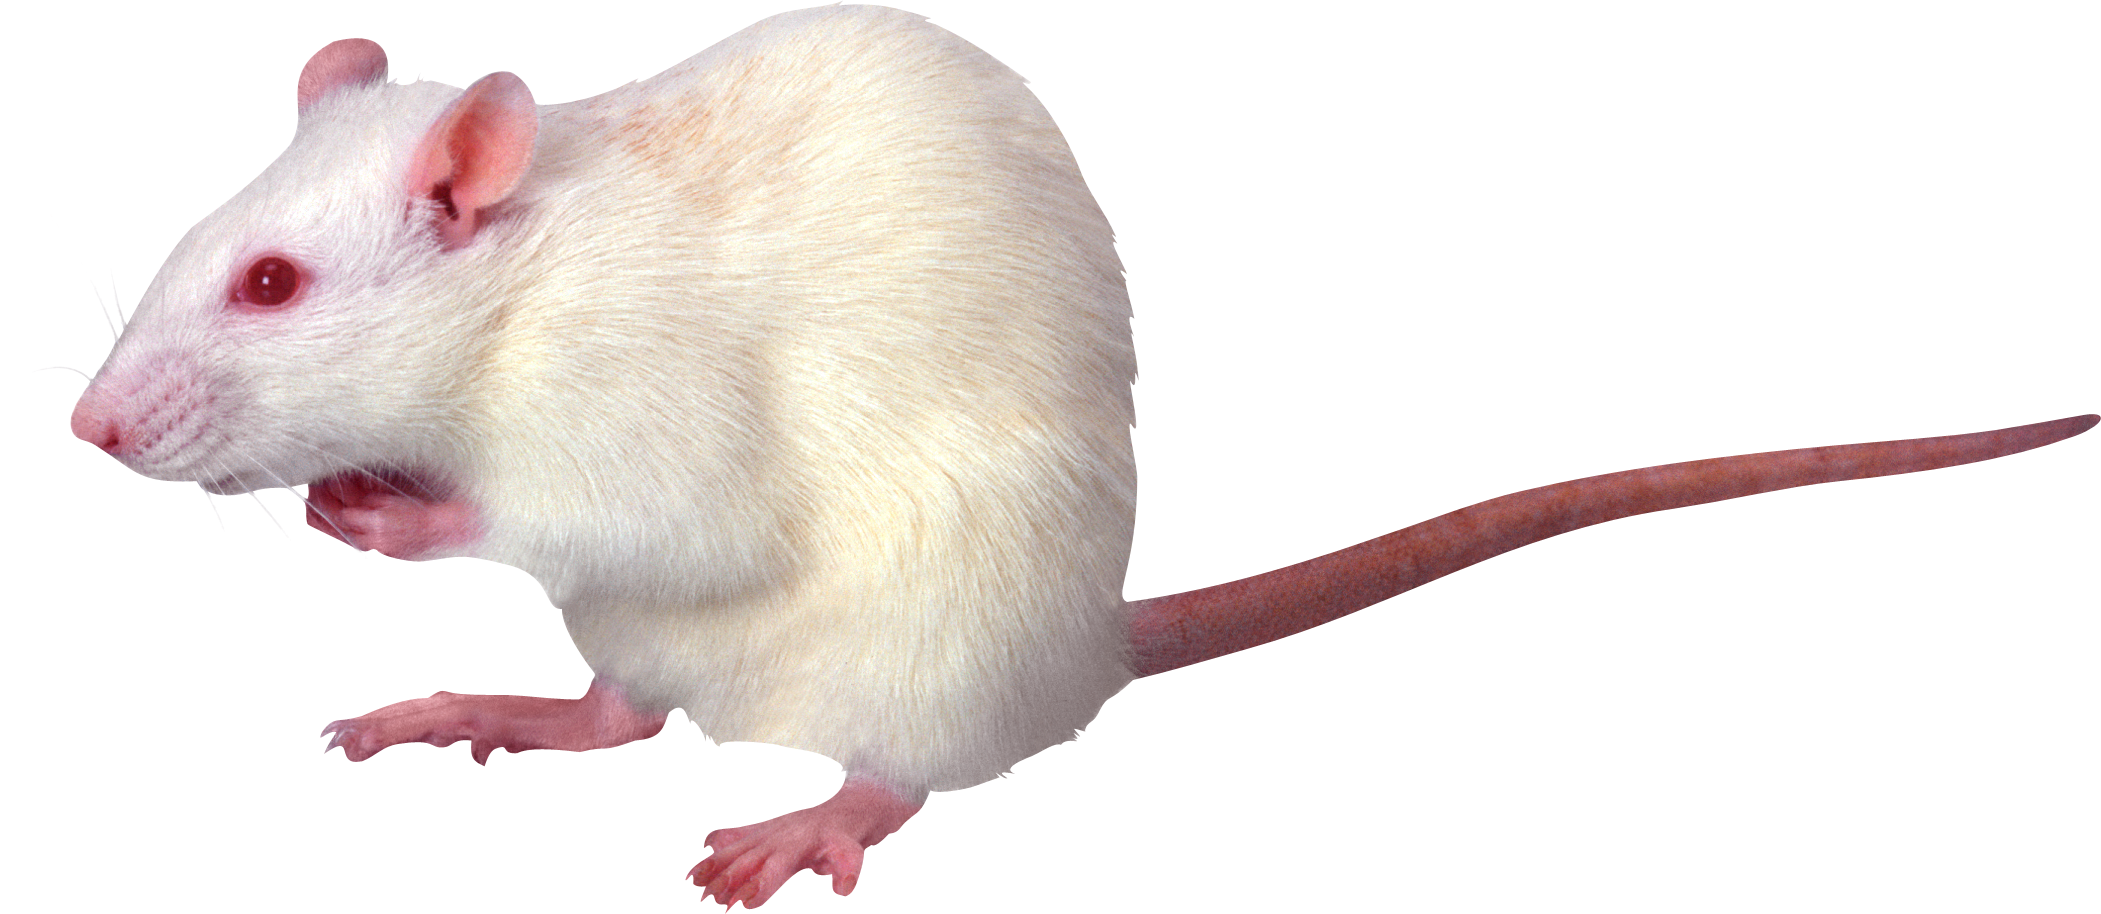 Rats PNG HD - 122282